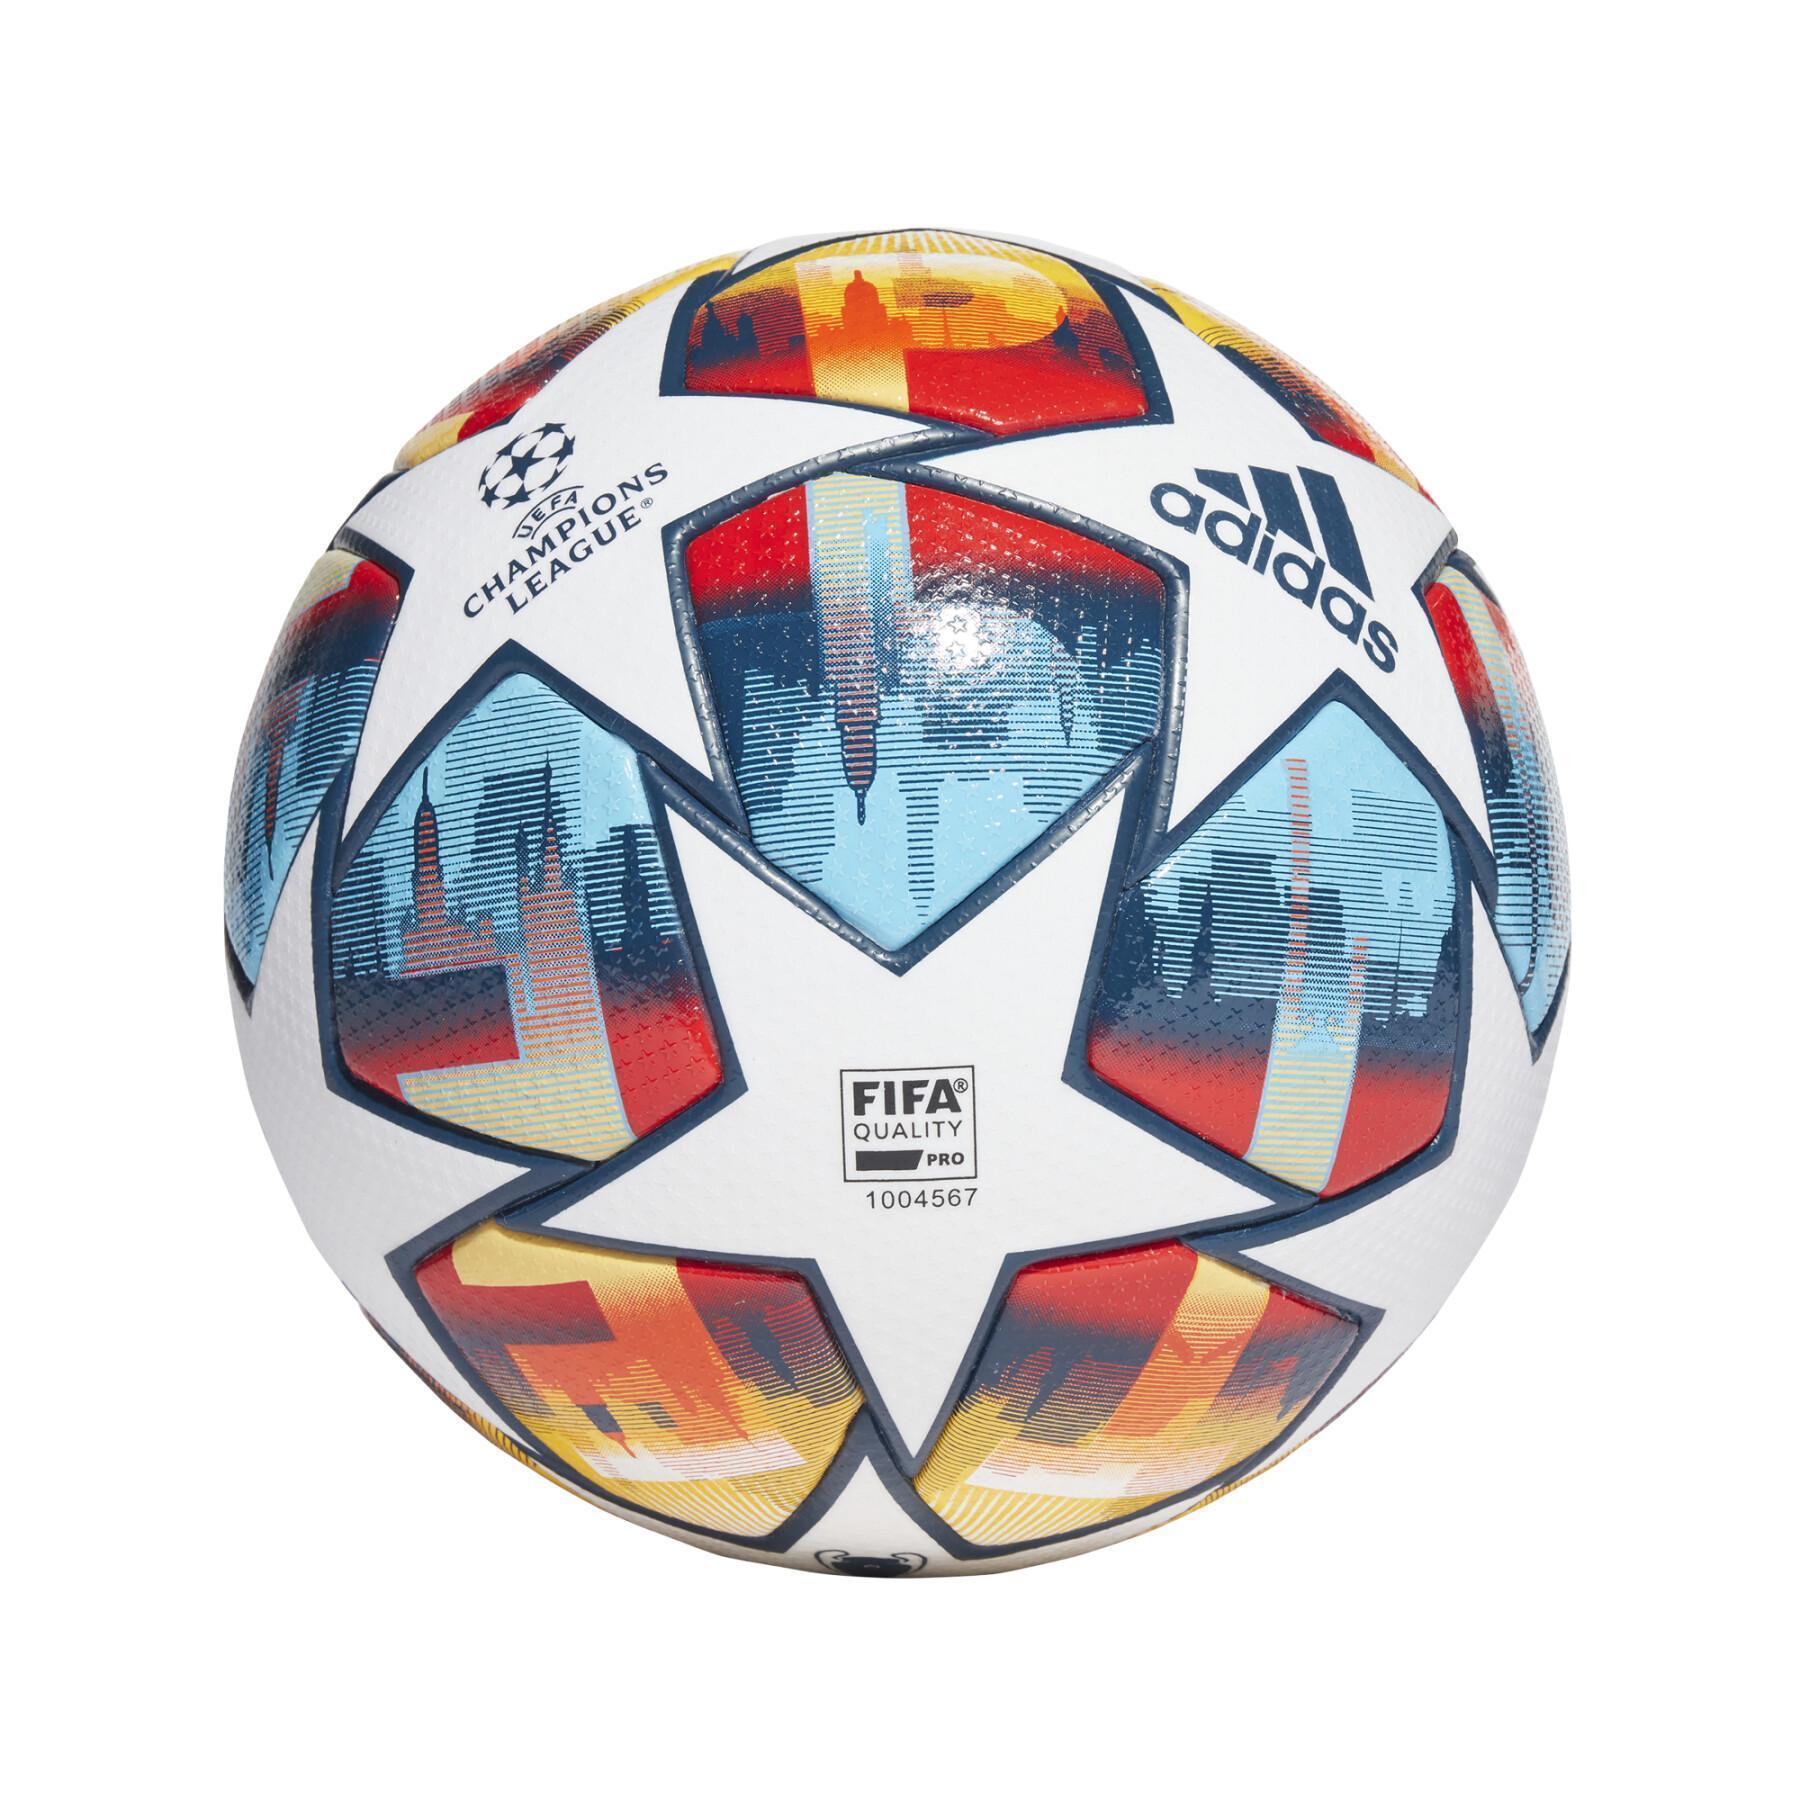 Balloon Zénith St-Pétersbourg Champions League Pro 2021/22